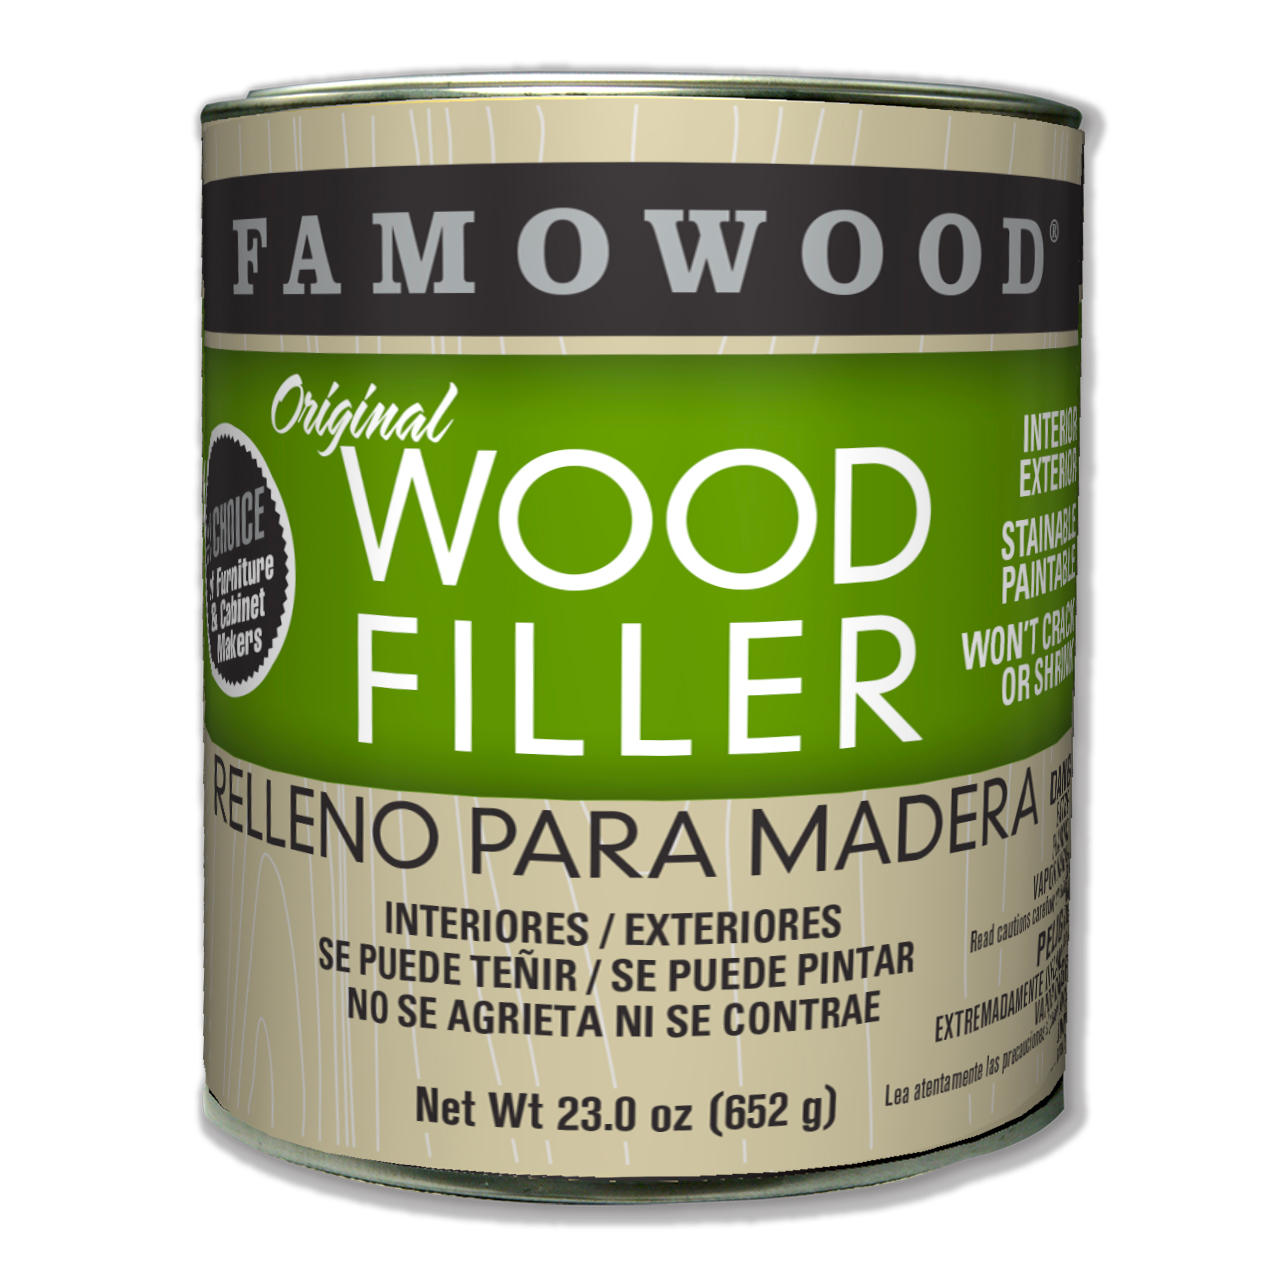 Famowood Alder Wood Filler, 23oz